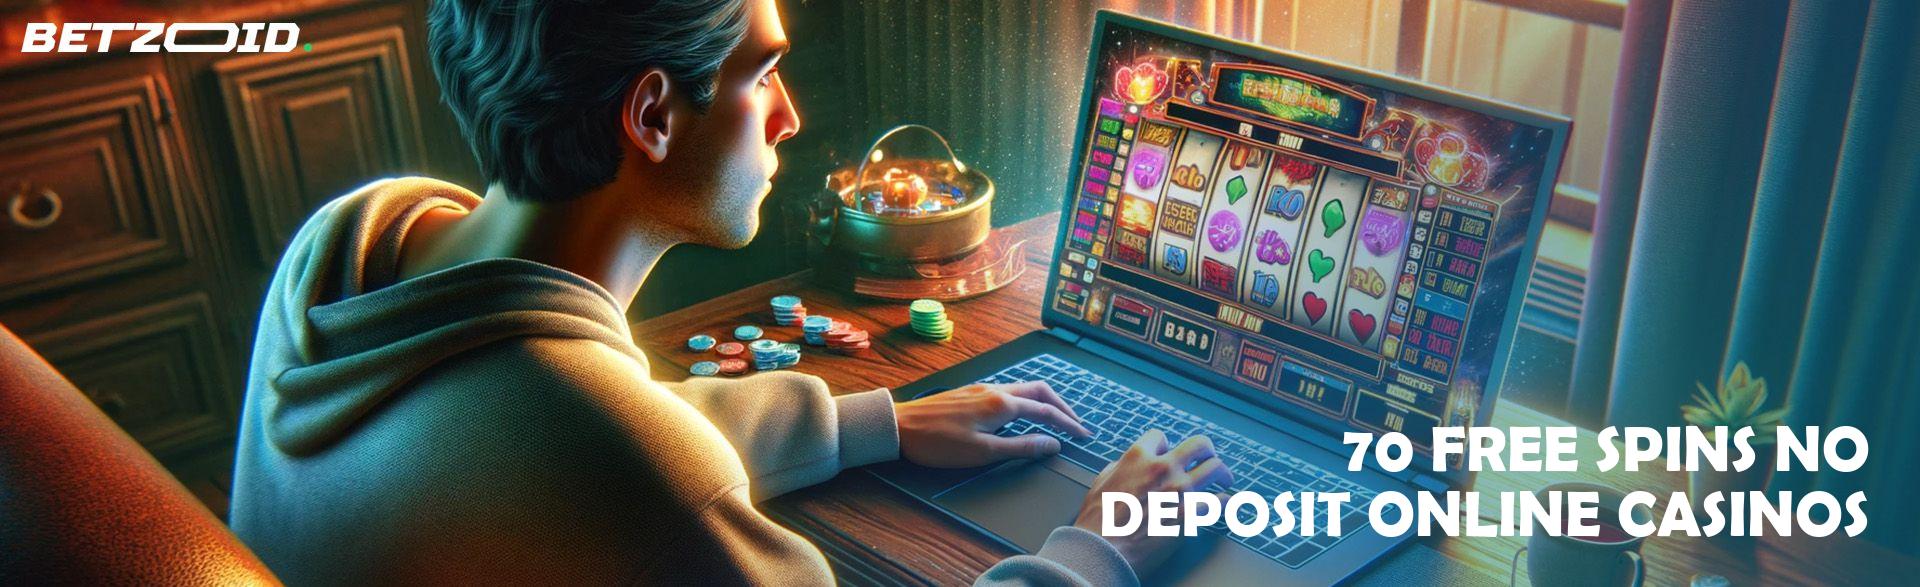 70 Free Spins No Deposit Online Casinos.